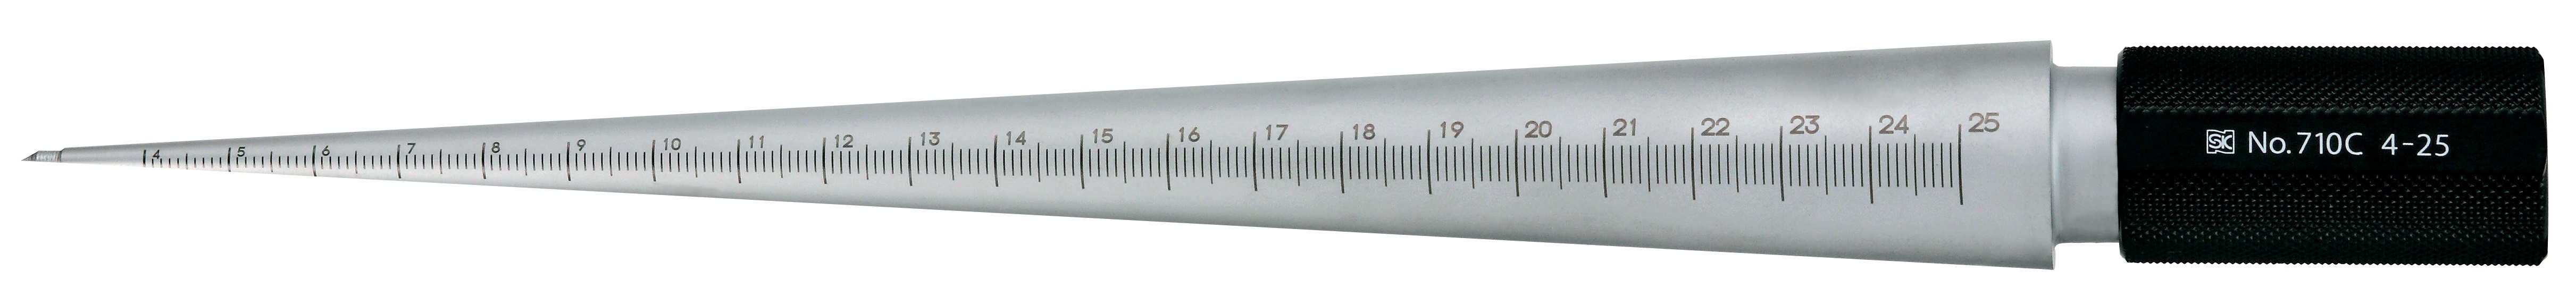 Calibres cónicos - cilíndricos para medir el tamaño del agujero, acabado plateado, TPG 710 TPG-710A